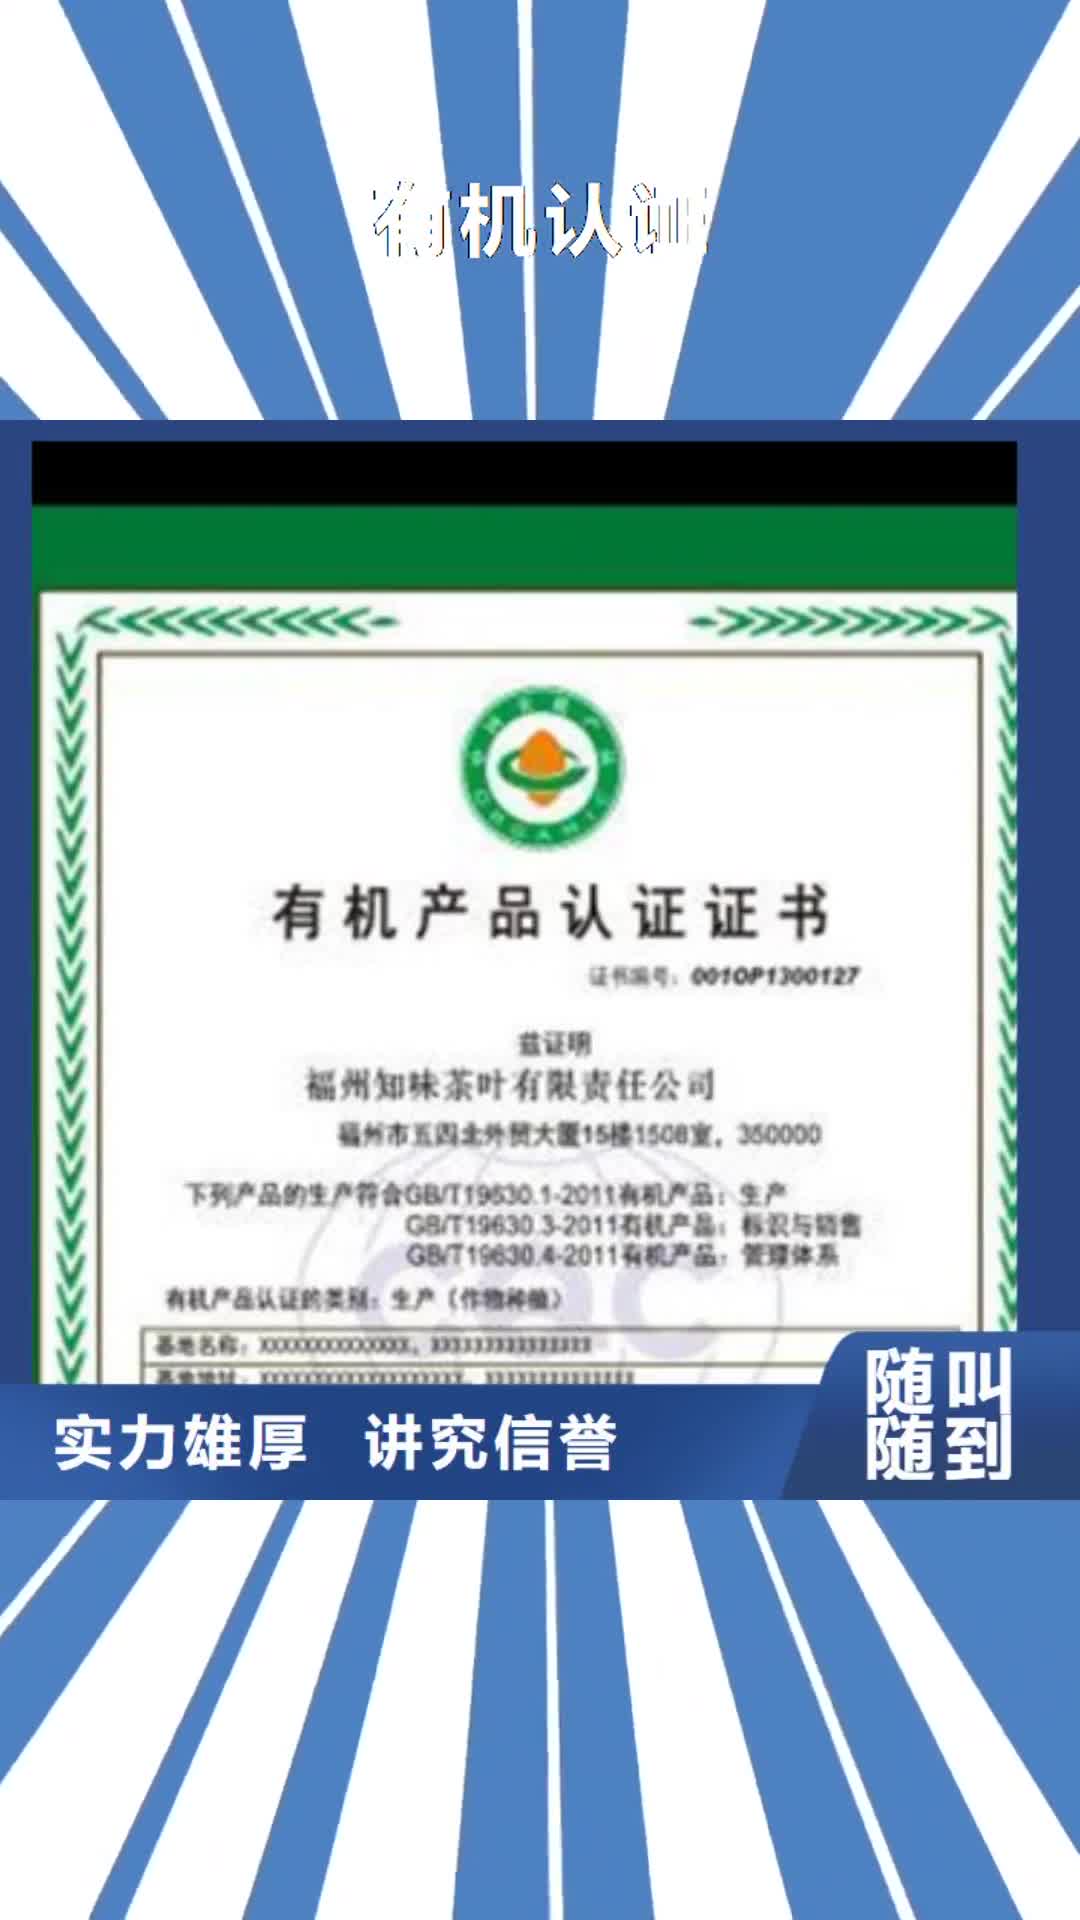 滁州【有机认证】 ISO14000\ESD防静电认证专业承接